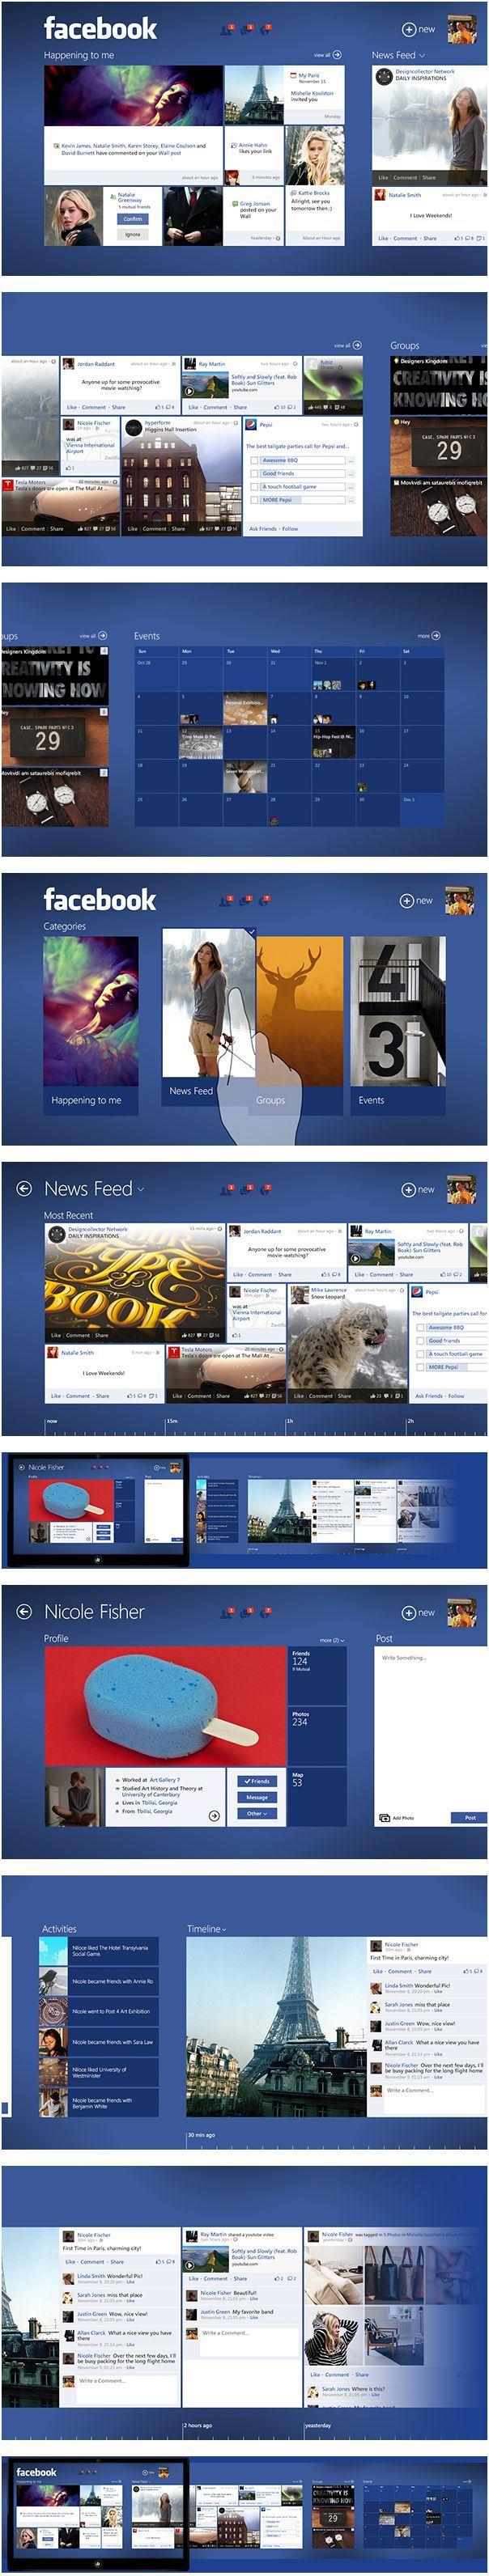 facebook-concept-windows-8